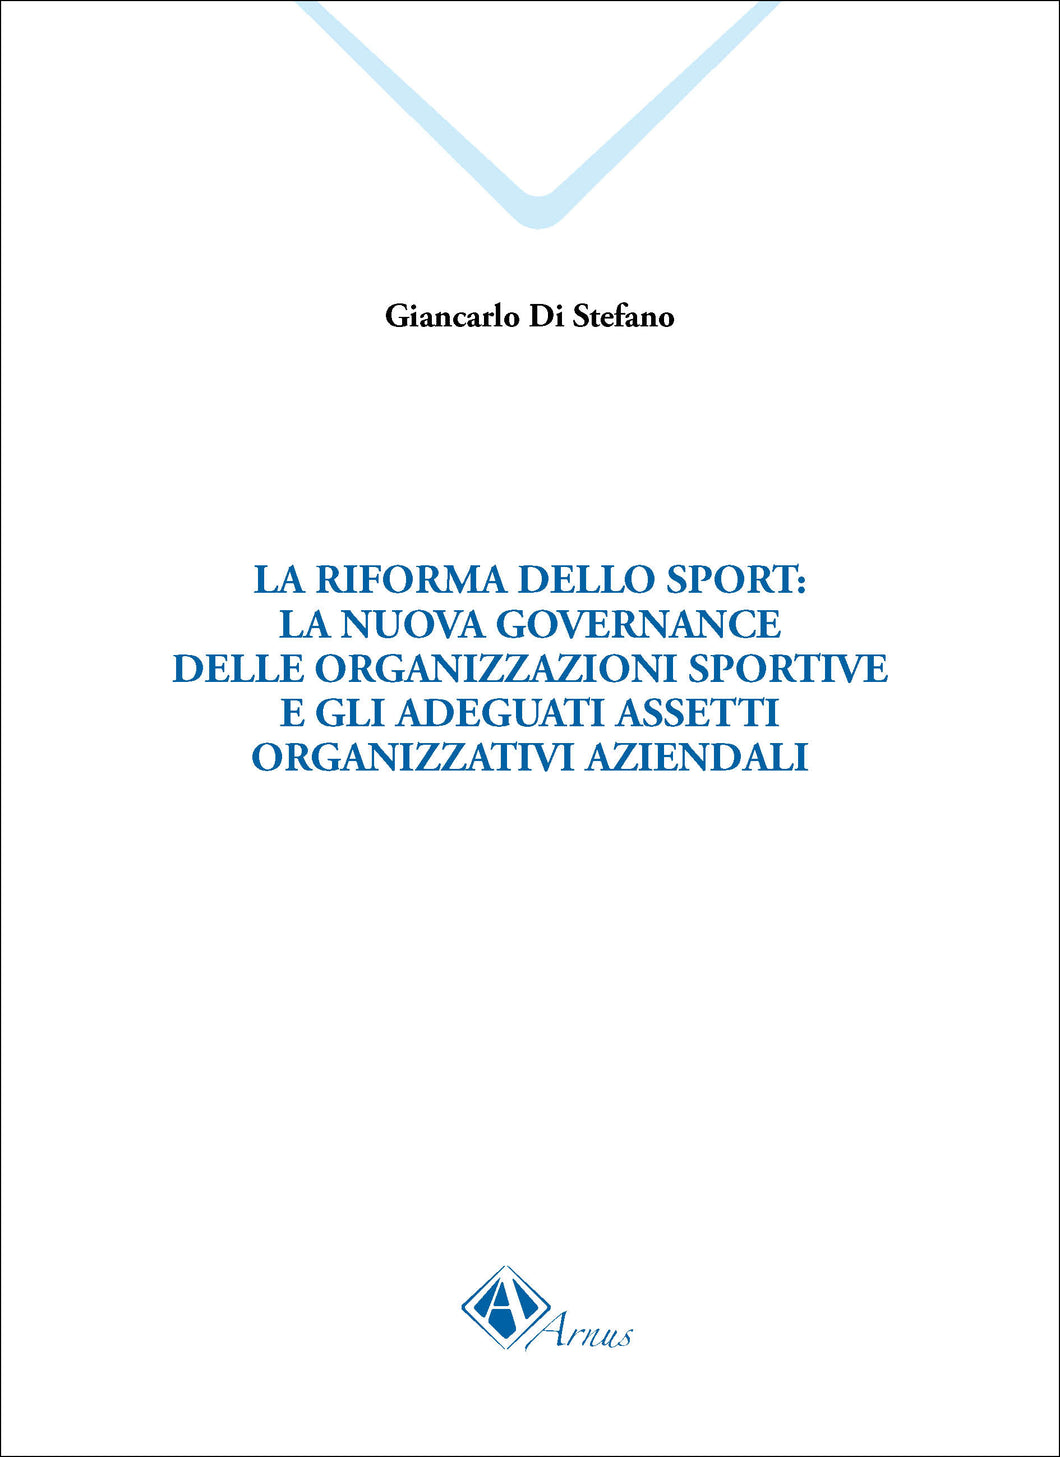 La riforma dello sport: la nuova governance delle organizzazioni sportive e gli adeguati assetti organizzativi aziendali